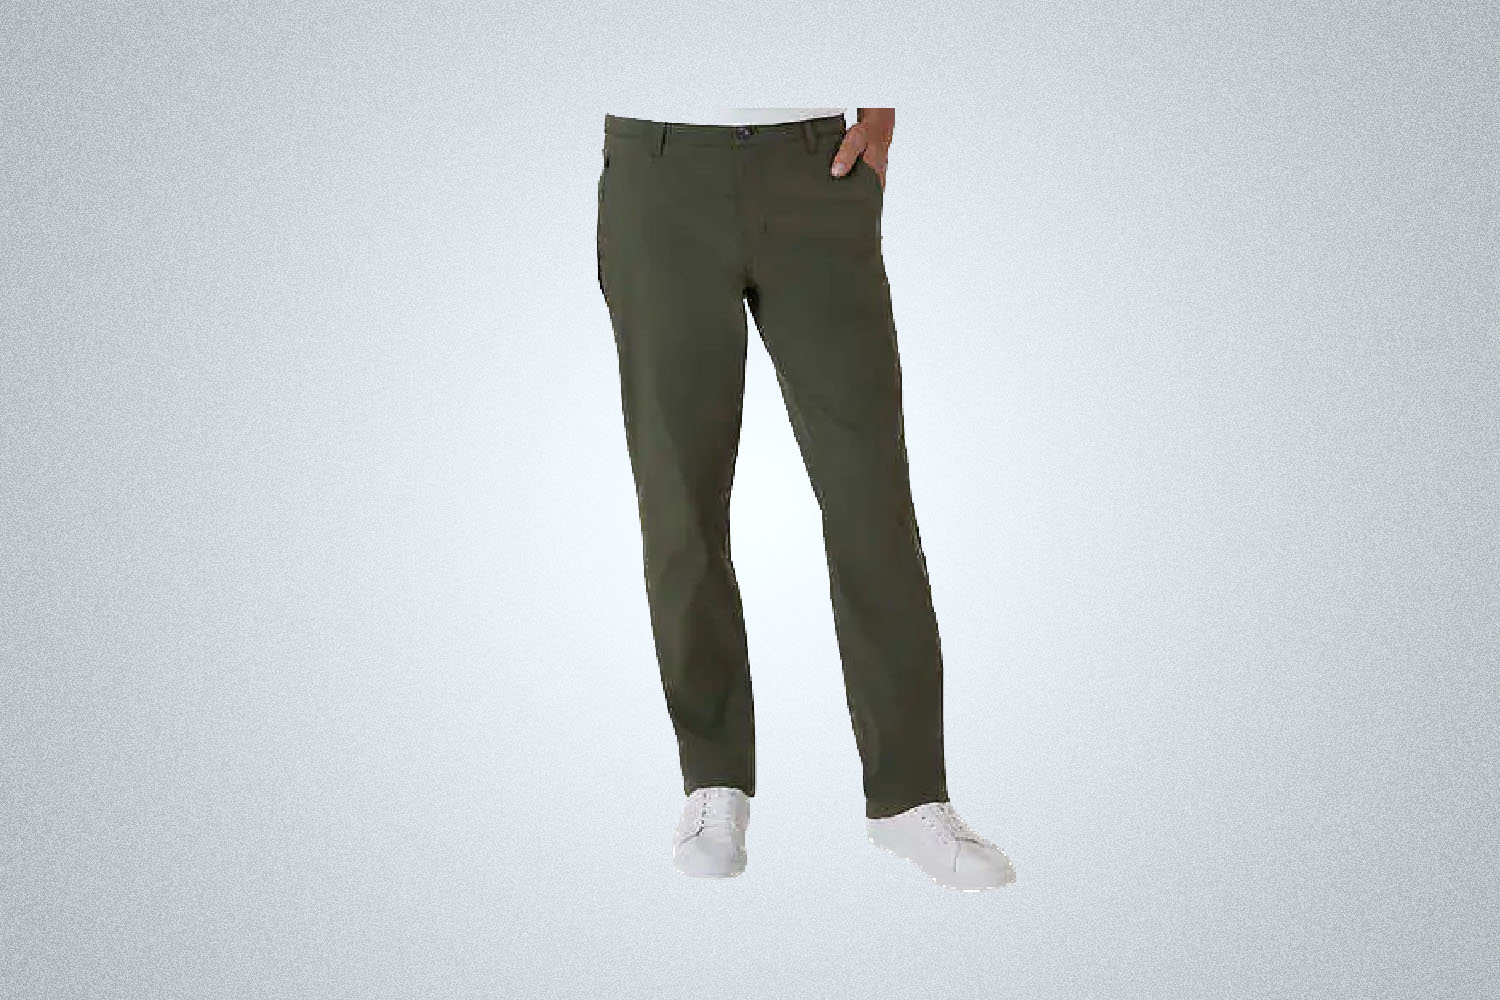 Weatherproof Vintage Pants 3 Pair Bundle